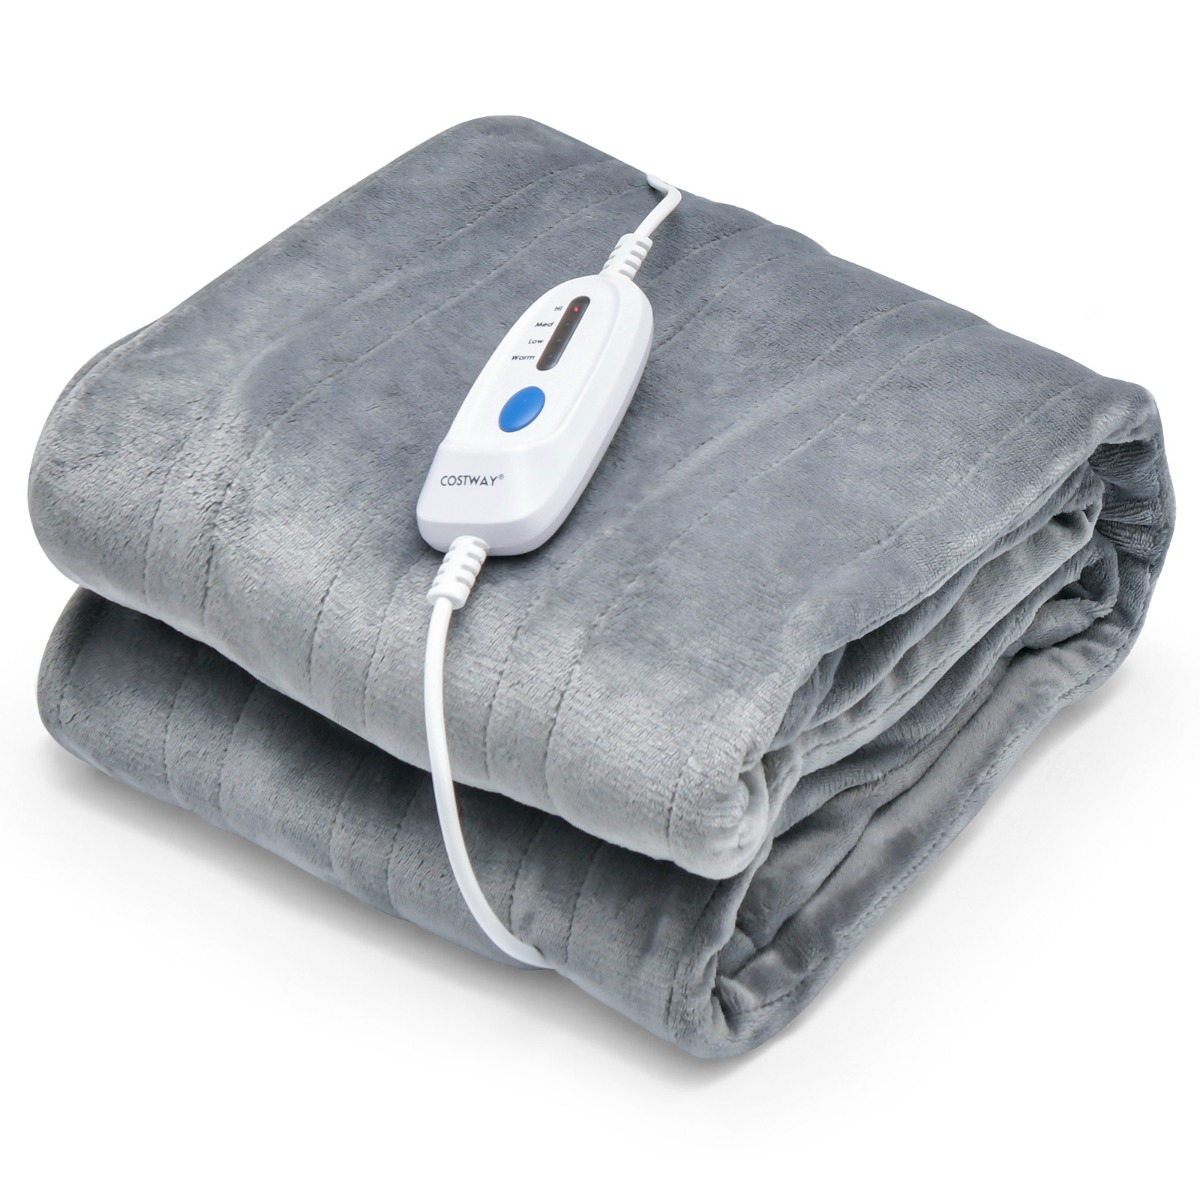 Warmtedeken Elektrische deken met 4 warmtestanden 130 x 180 cm grijs